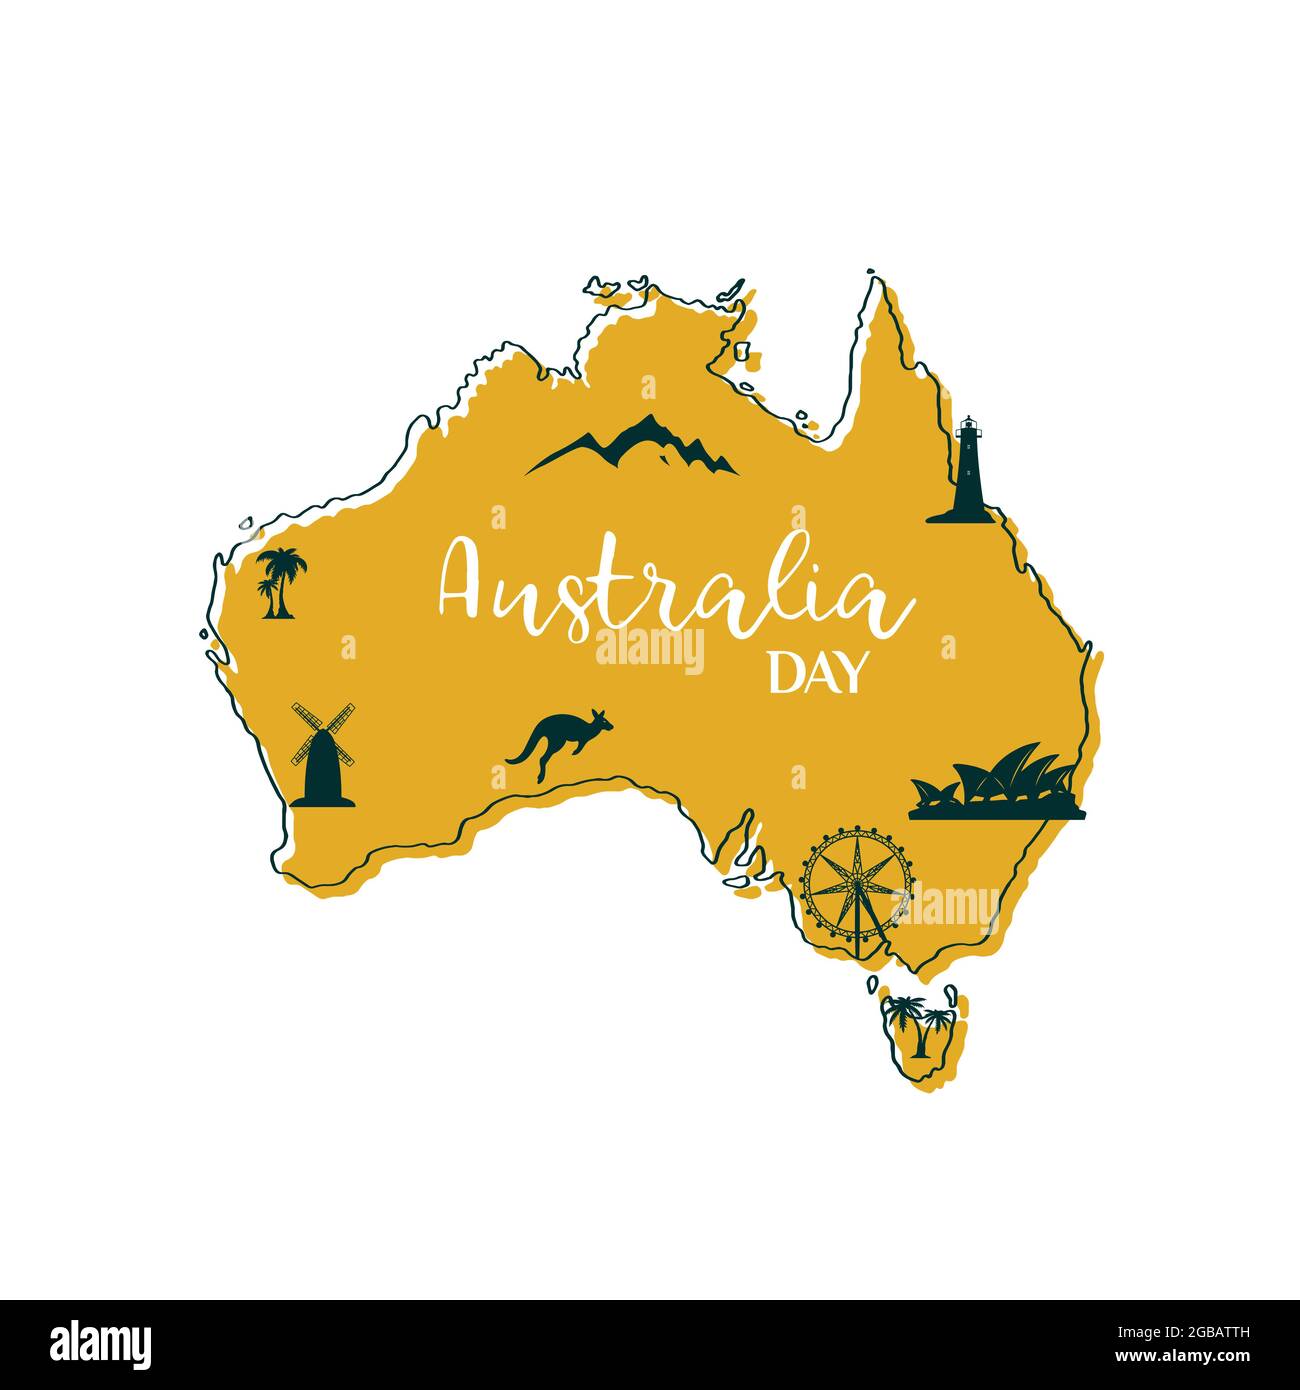 Mapa estilizado de Australia con los principales símbolos australianos Kanguroo, la Ópera de Sídney, la noria, la casa de la luz, las palmeras y las montañas. Vector illustrati Ilustración del Vector